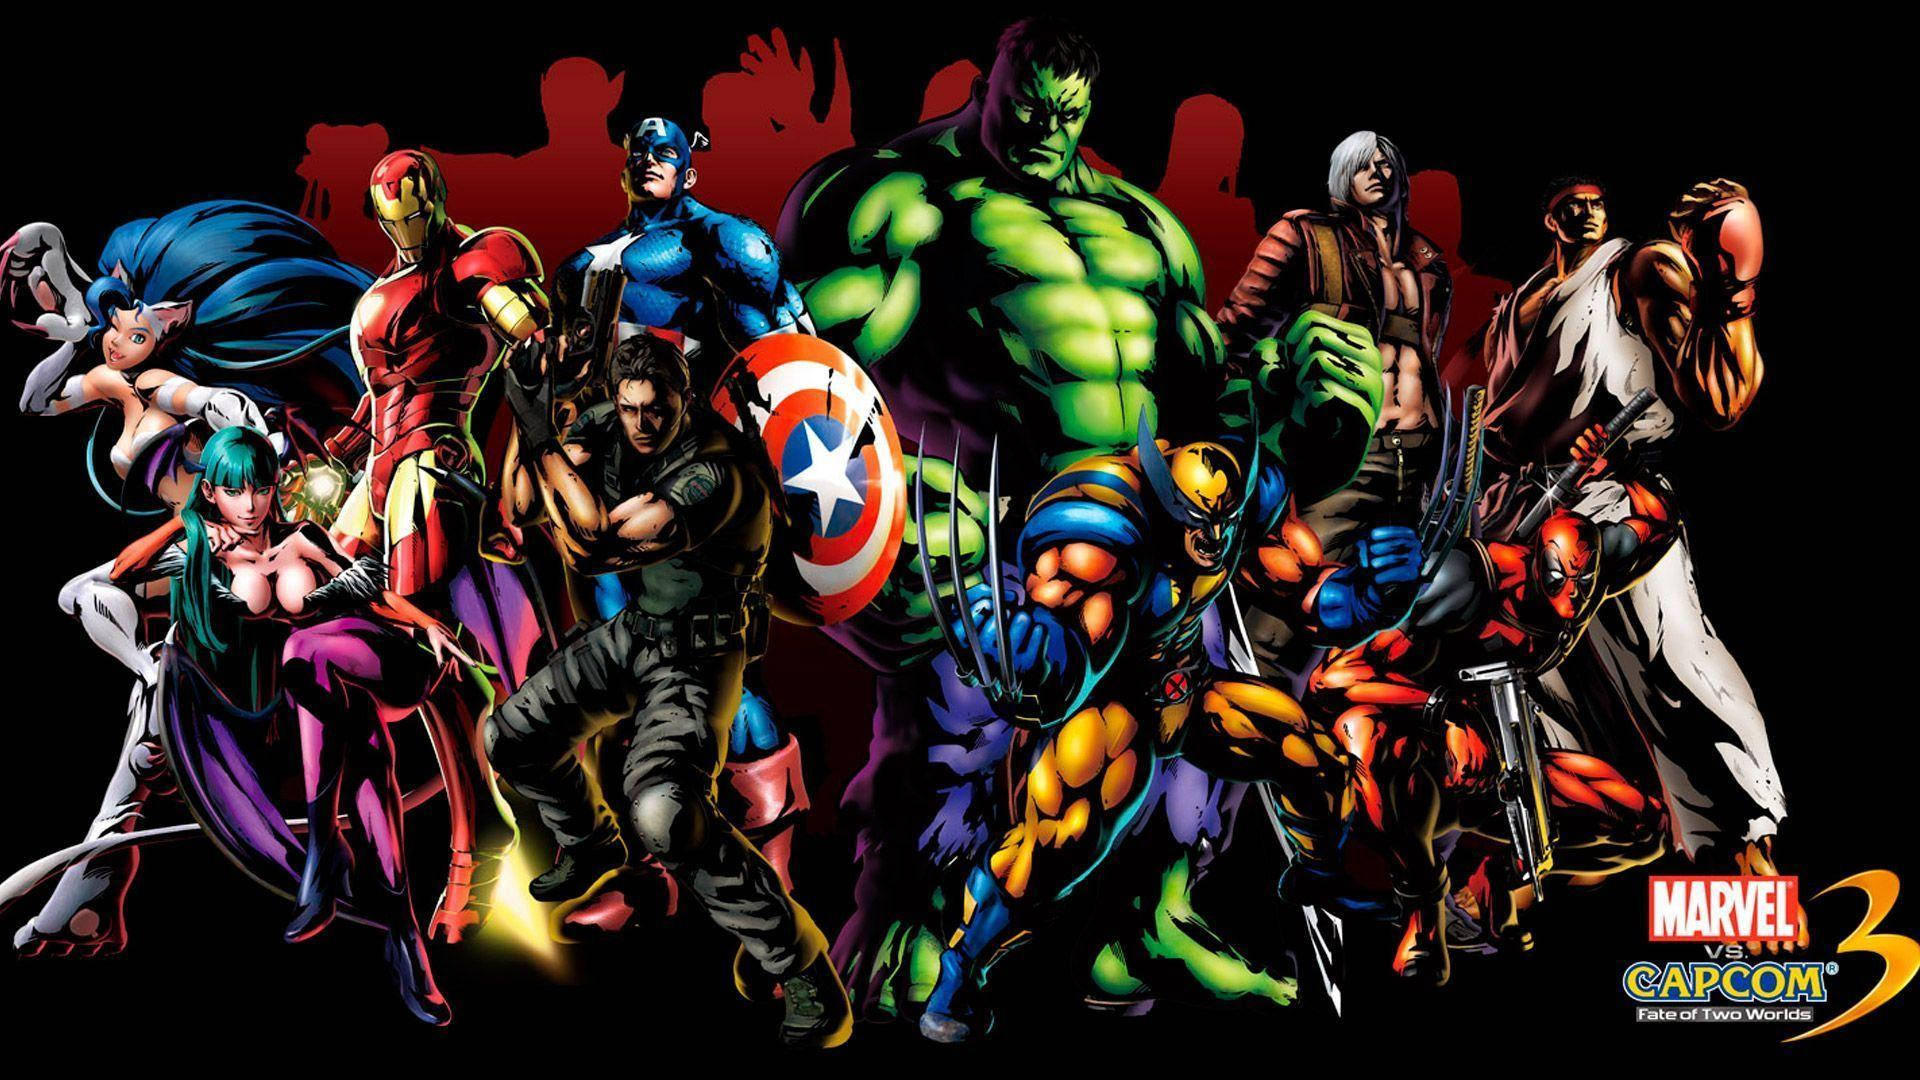 Marvel Superheroes Capcom 3 Background